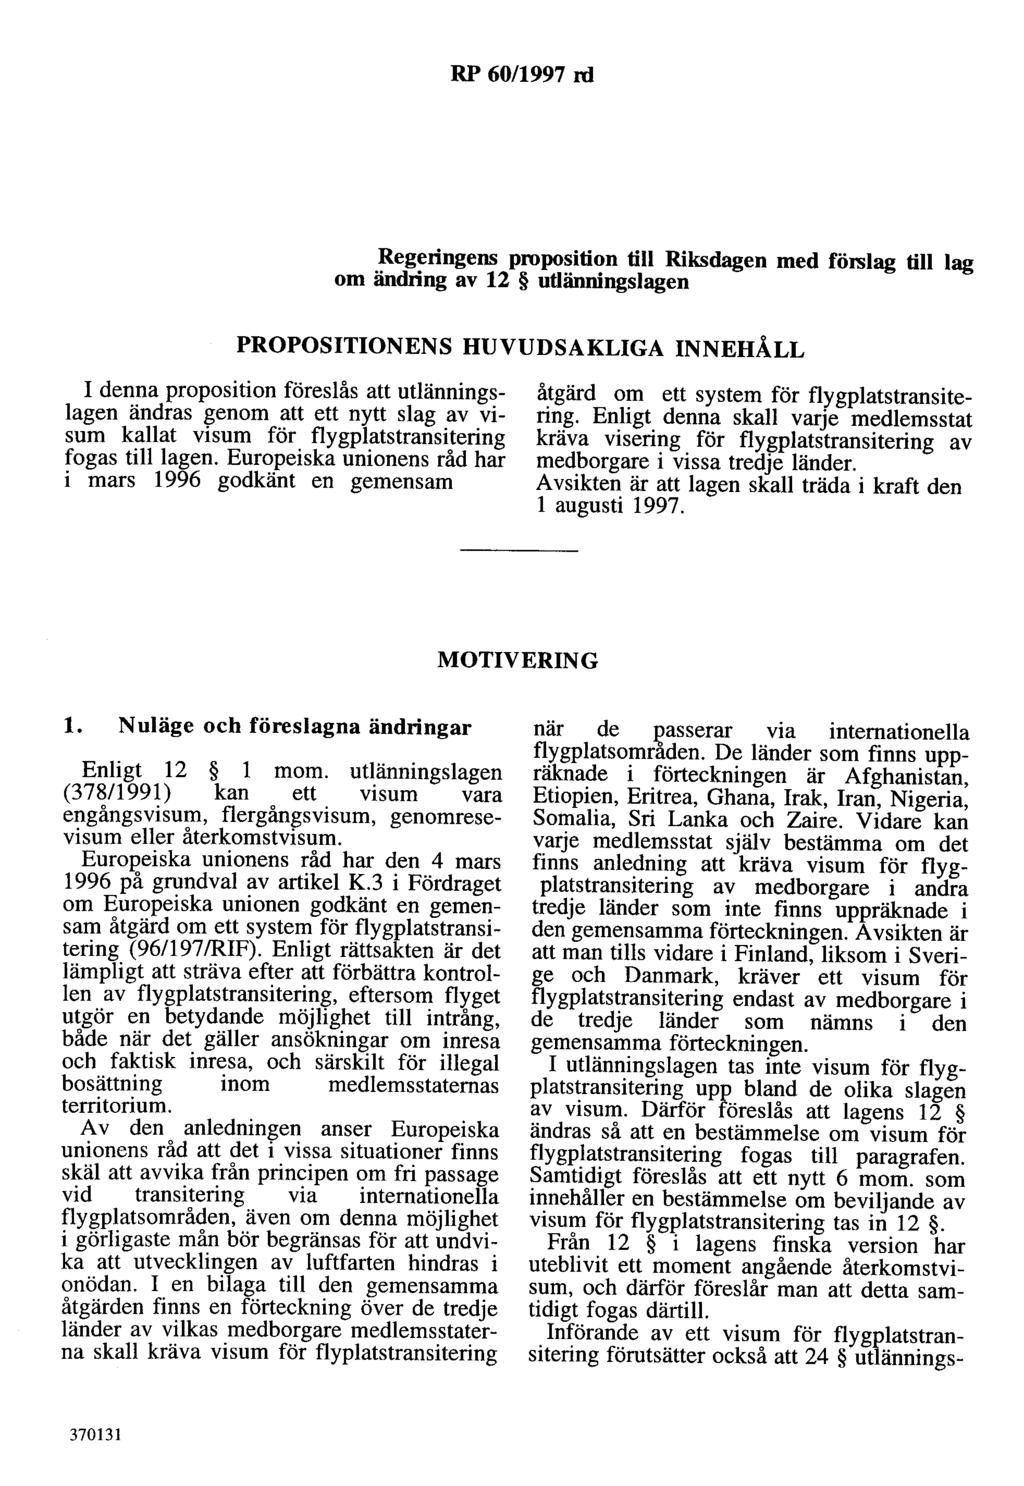 RP 60/1997 rd Regeringens proposition till Riksdagen med förslag till lag om ändring av 12 utlänningslagen PROPOSITIONENS HUVUDSAKLIGA INNEHÅLL I denna proposition föreslås att utlänningslagen ändras